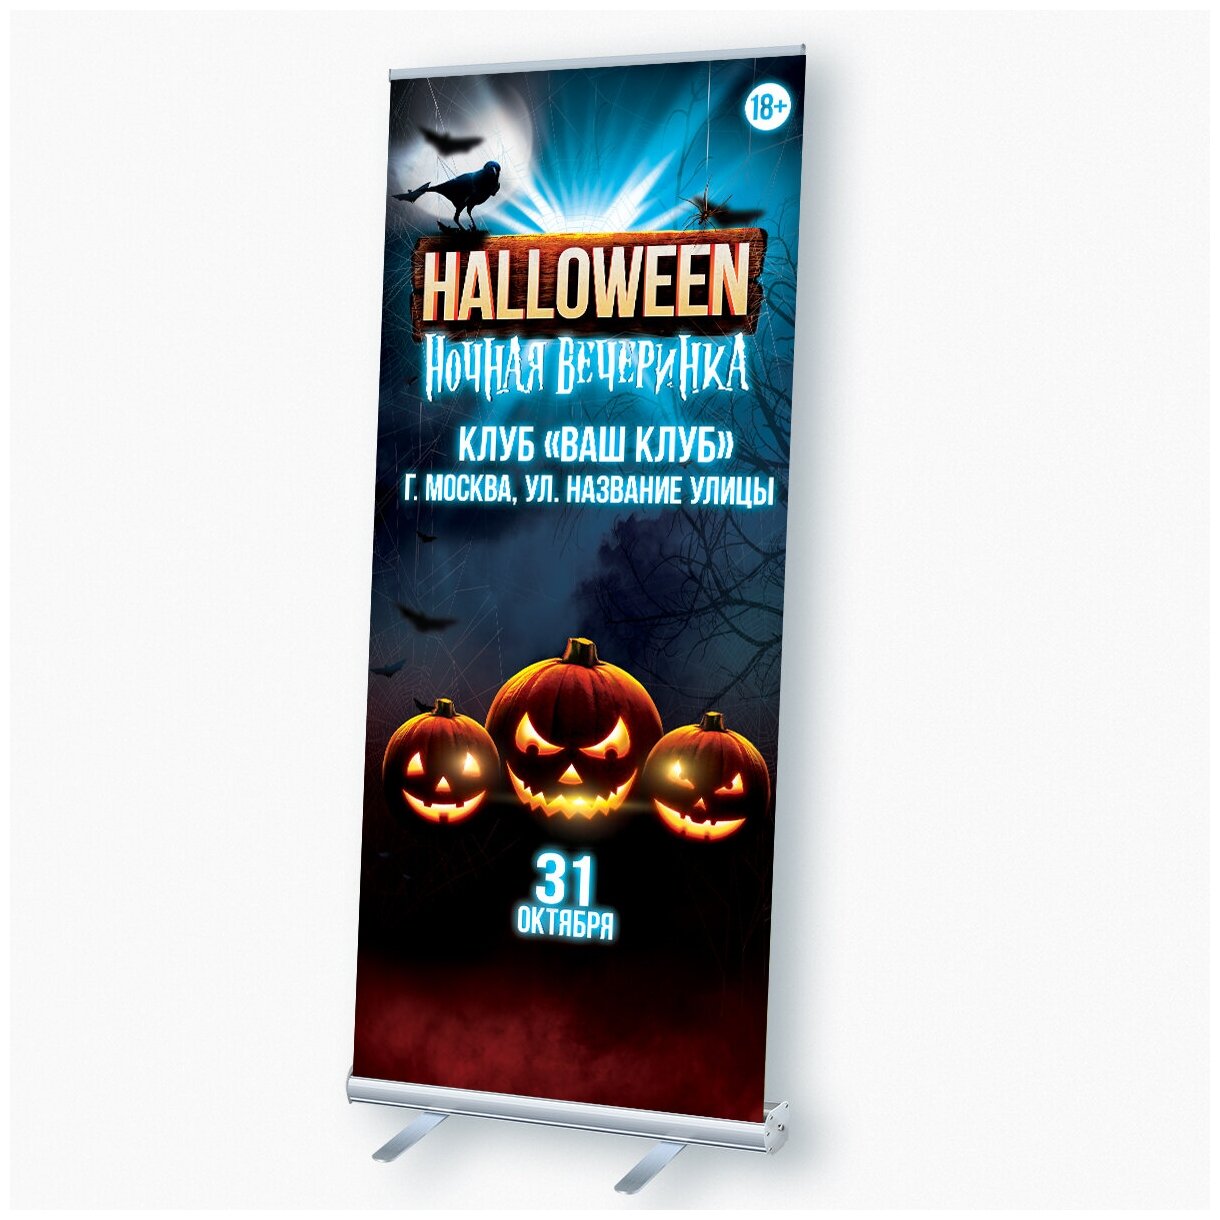 Мобильный cтенд Ролл Ап (Roll Up) с печатью баннера на Хэллоуин / 100x200 см.